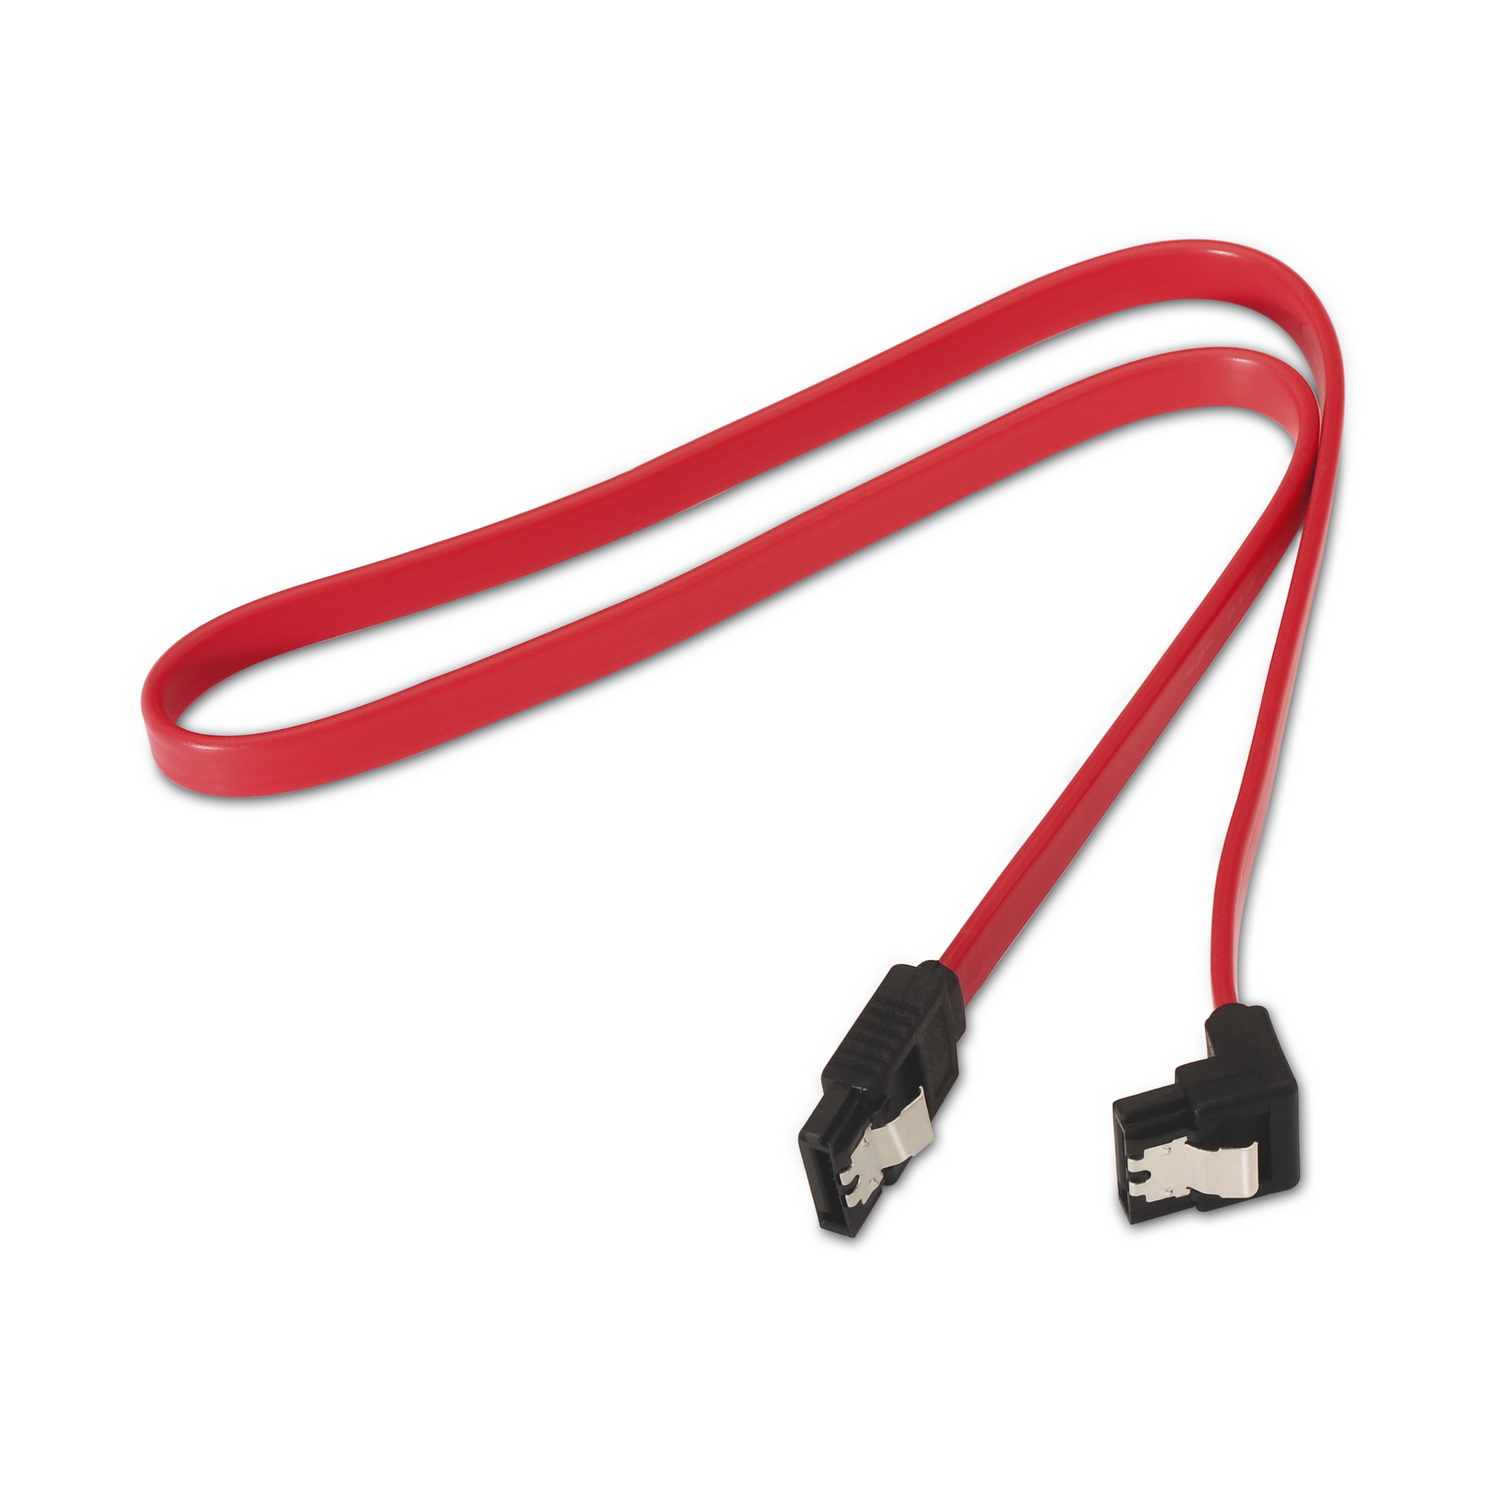 Aisens Câble SATA III Data 6G Data Coudé avec Ancrages - 0.5m pour Disque Dur SATA I - II - III SSD - Couleur Rouge